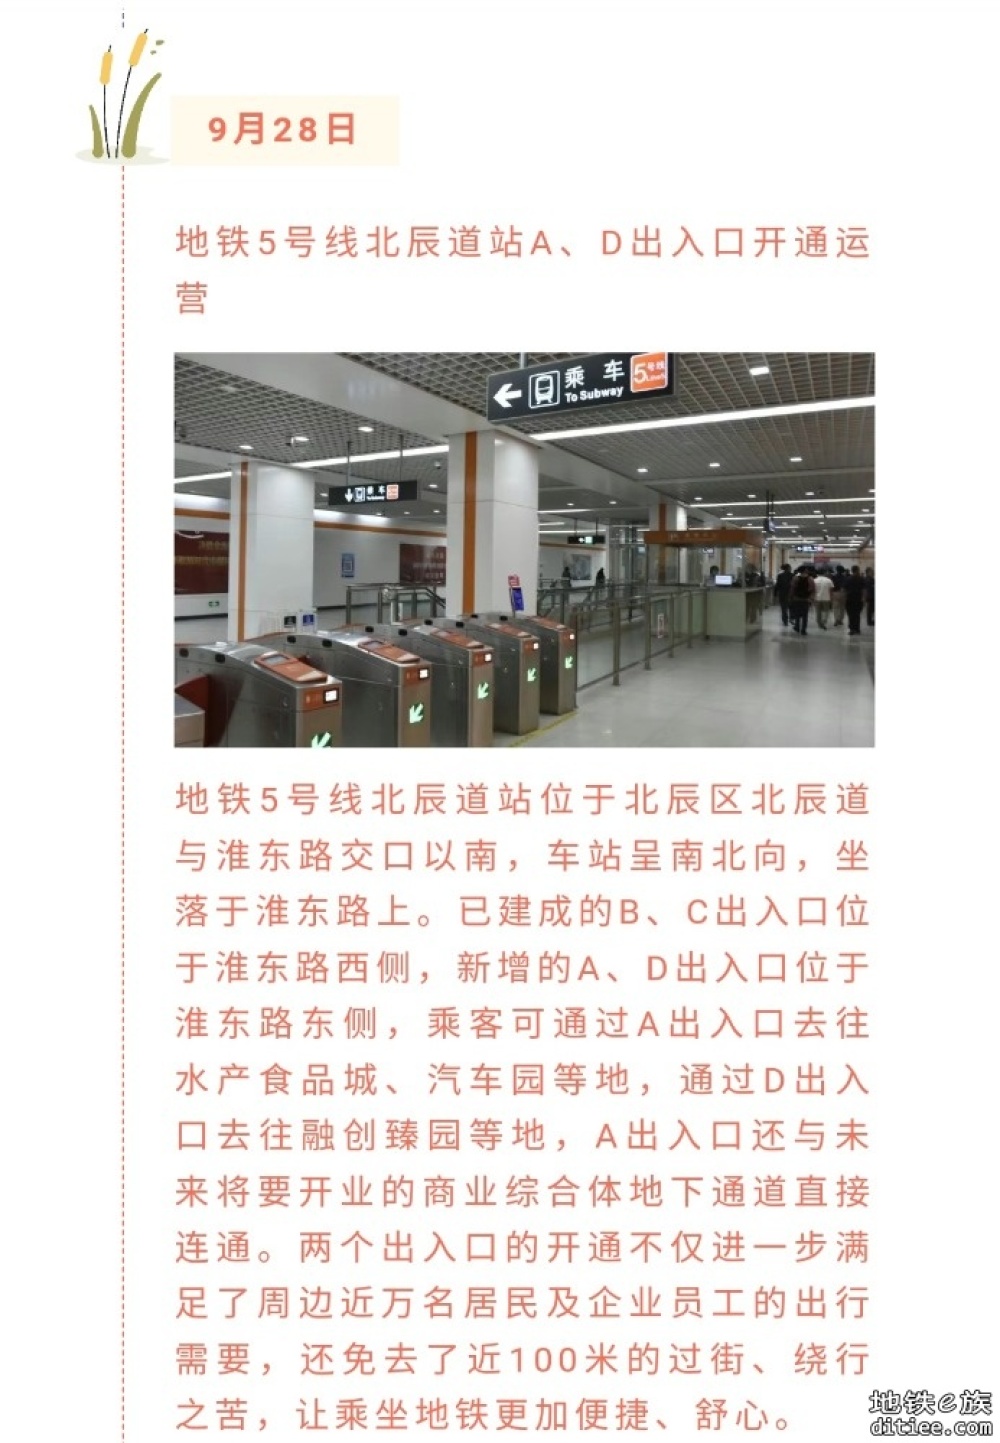 天津轨道交通建设最新工程进展